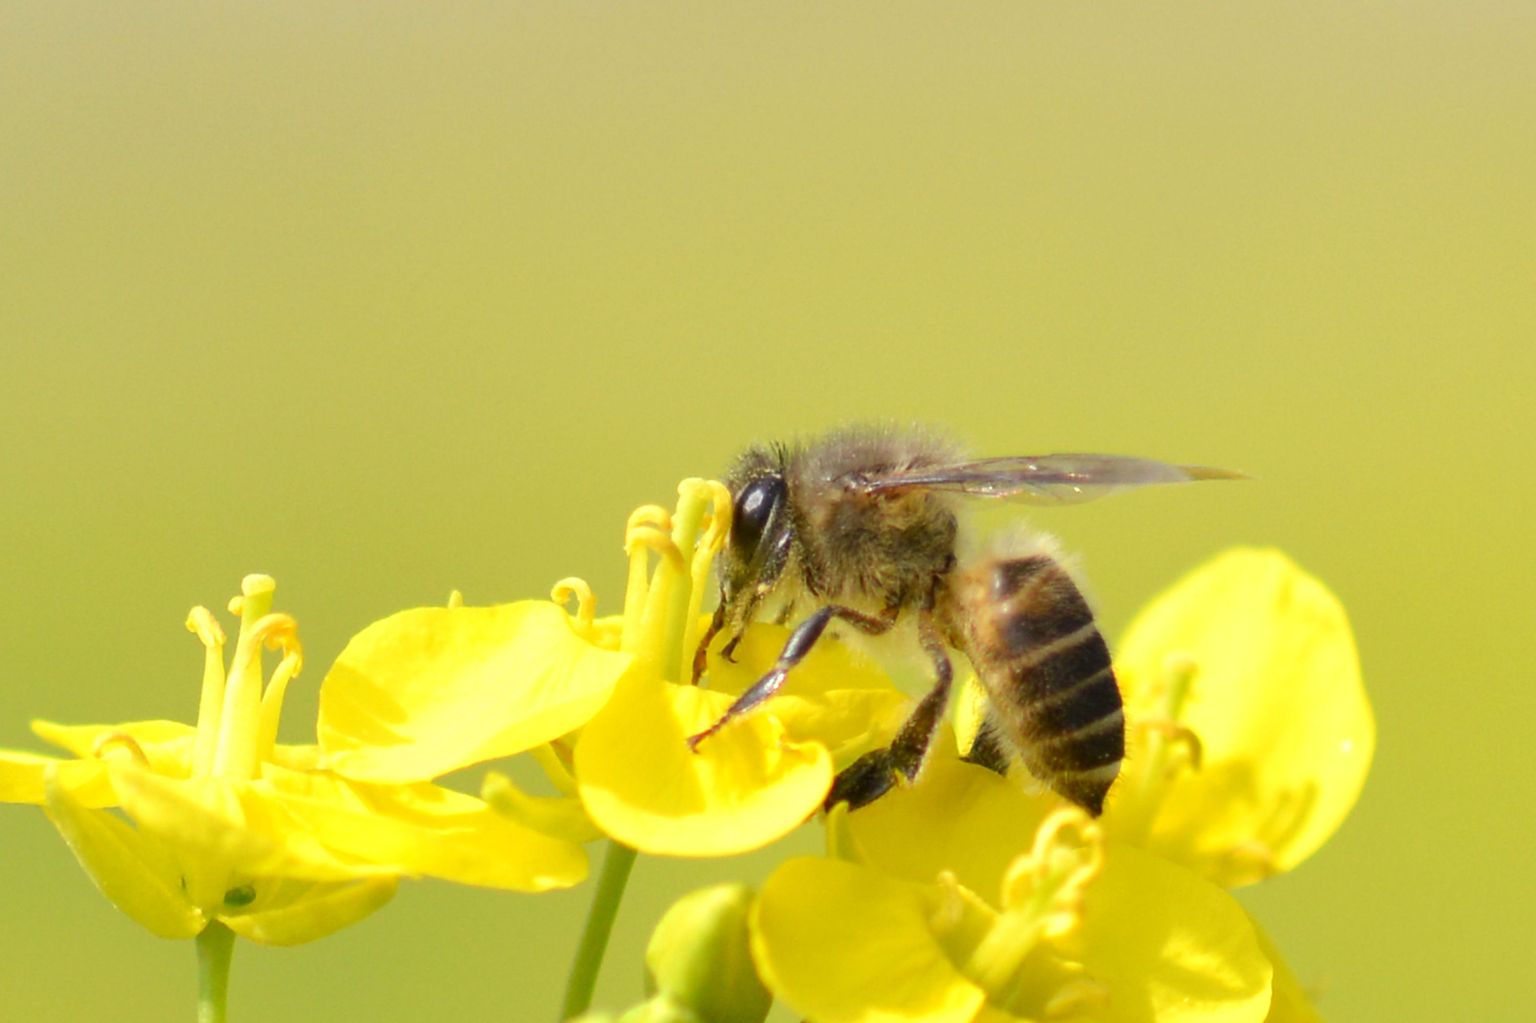 Rapsikasvatuses laialdaselt kasutatavad neonikotinoidide põhised putukamürgid põhjustavad mesilasperede hävimist, näitab inglise teadlaste uuring.